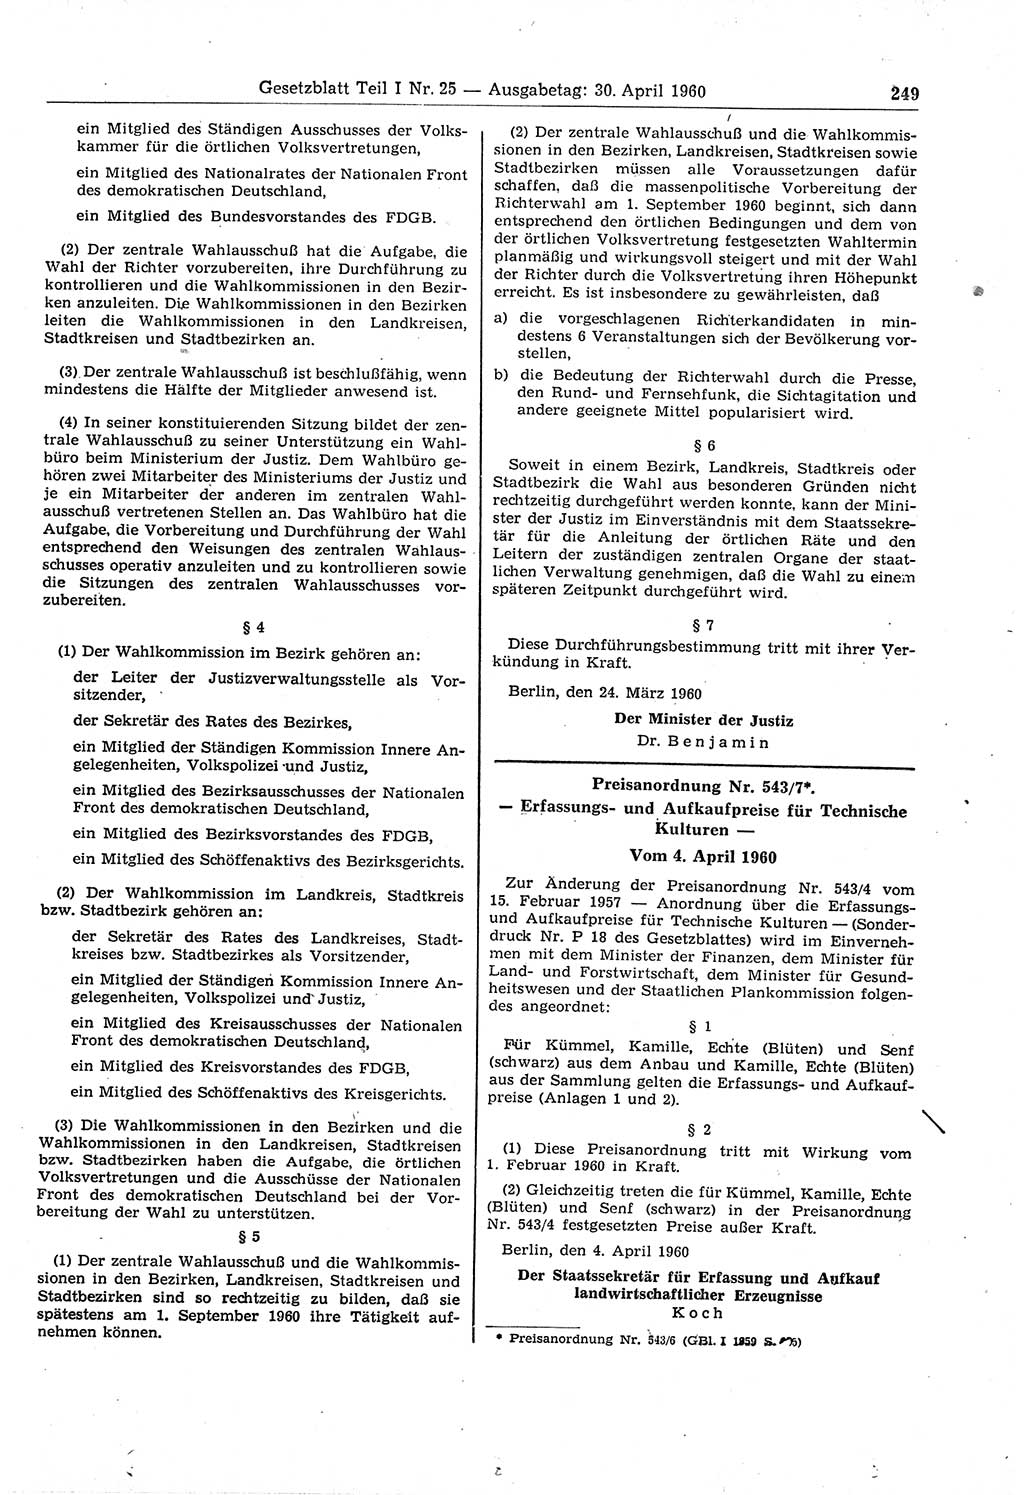 Gesetzblatt (GBl.) der Deutschen Demokratischen Republik (DDR) Teil Ⅰ 1960, Seite 249 (GBl. DDR Ⅰ 1960, S. 249)